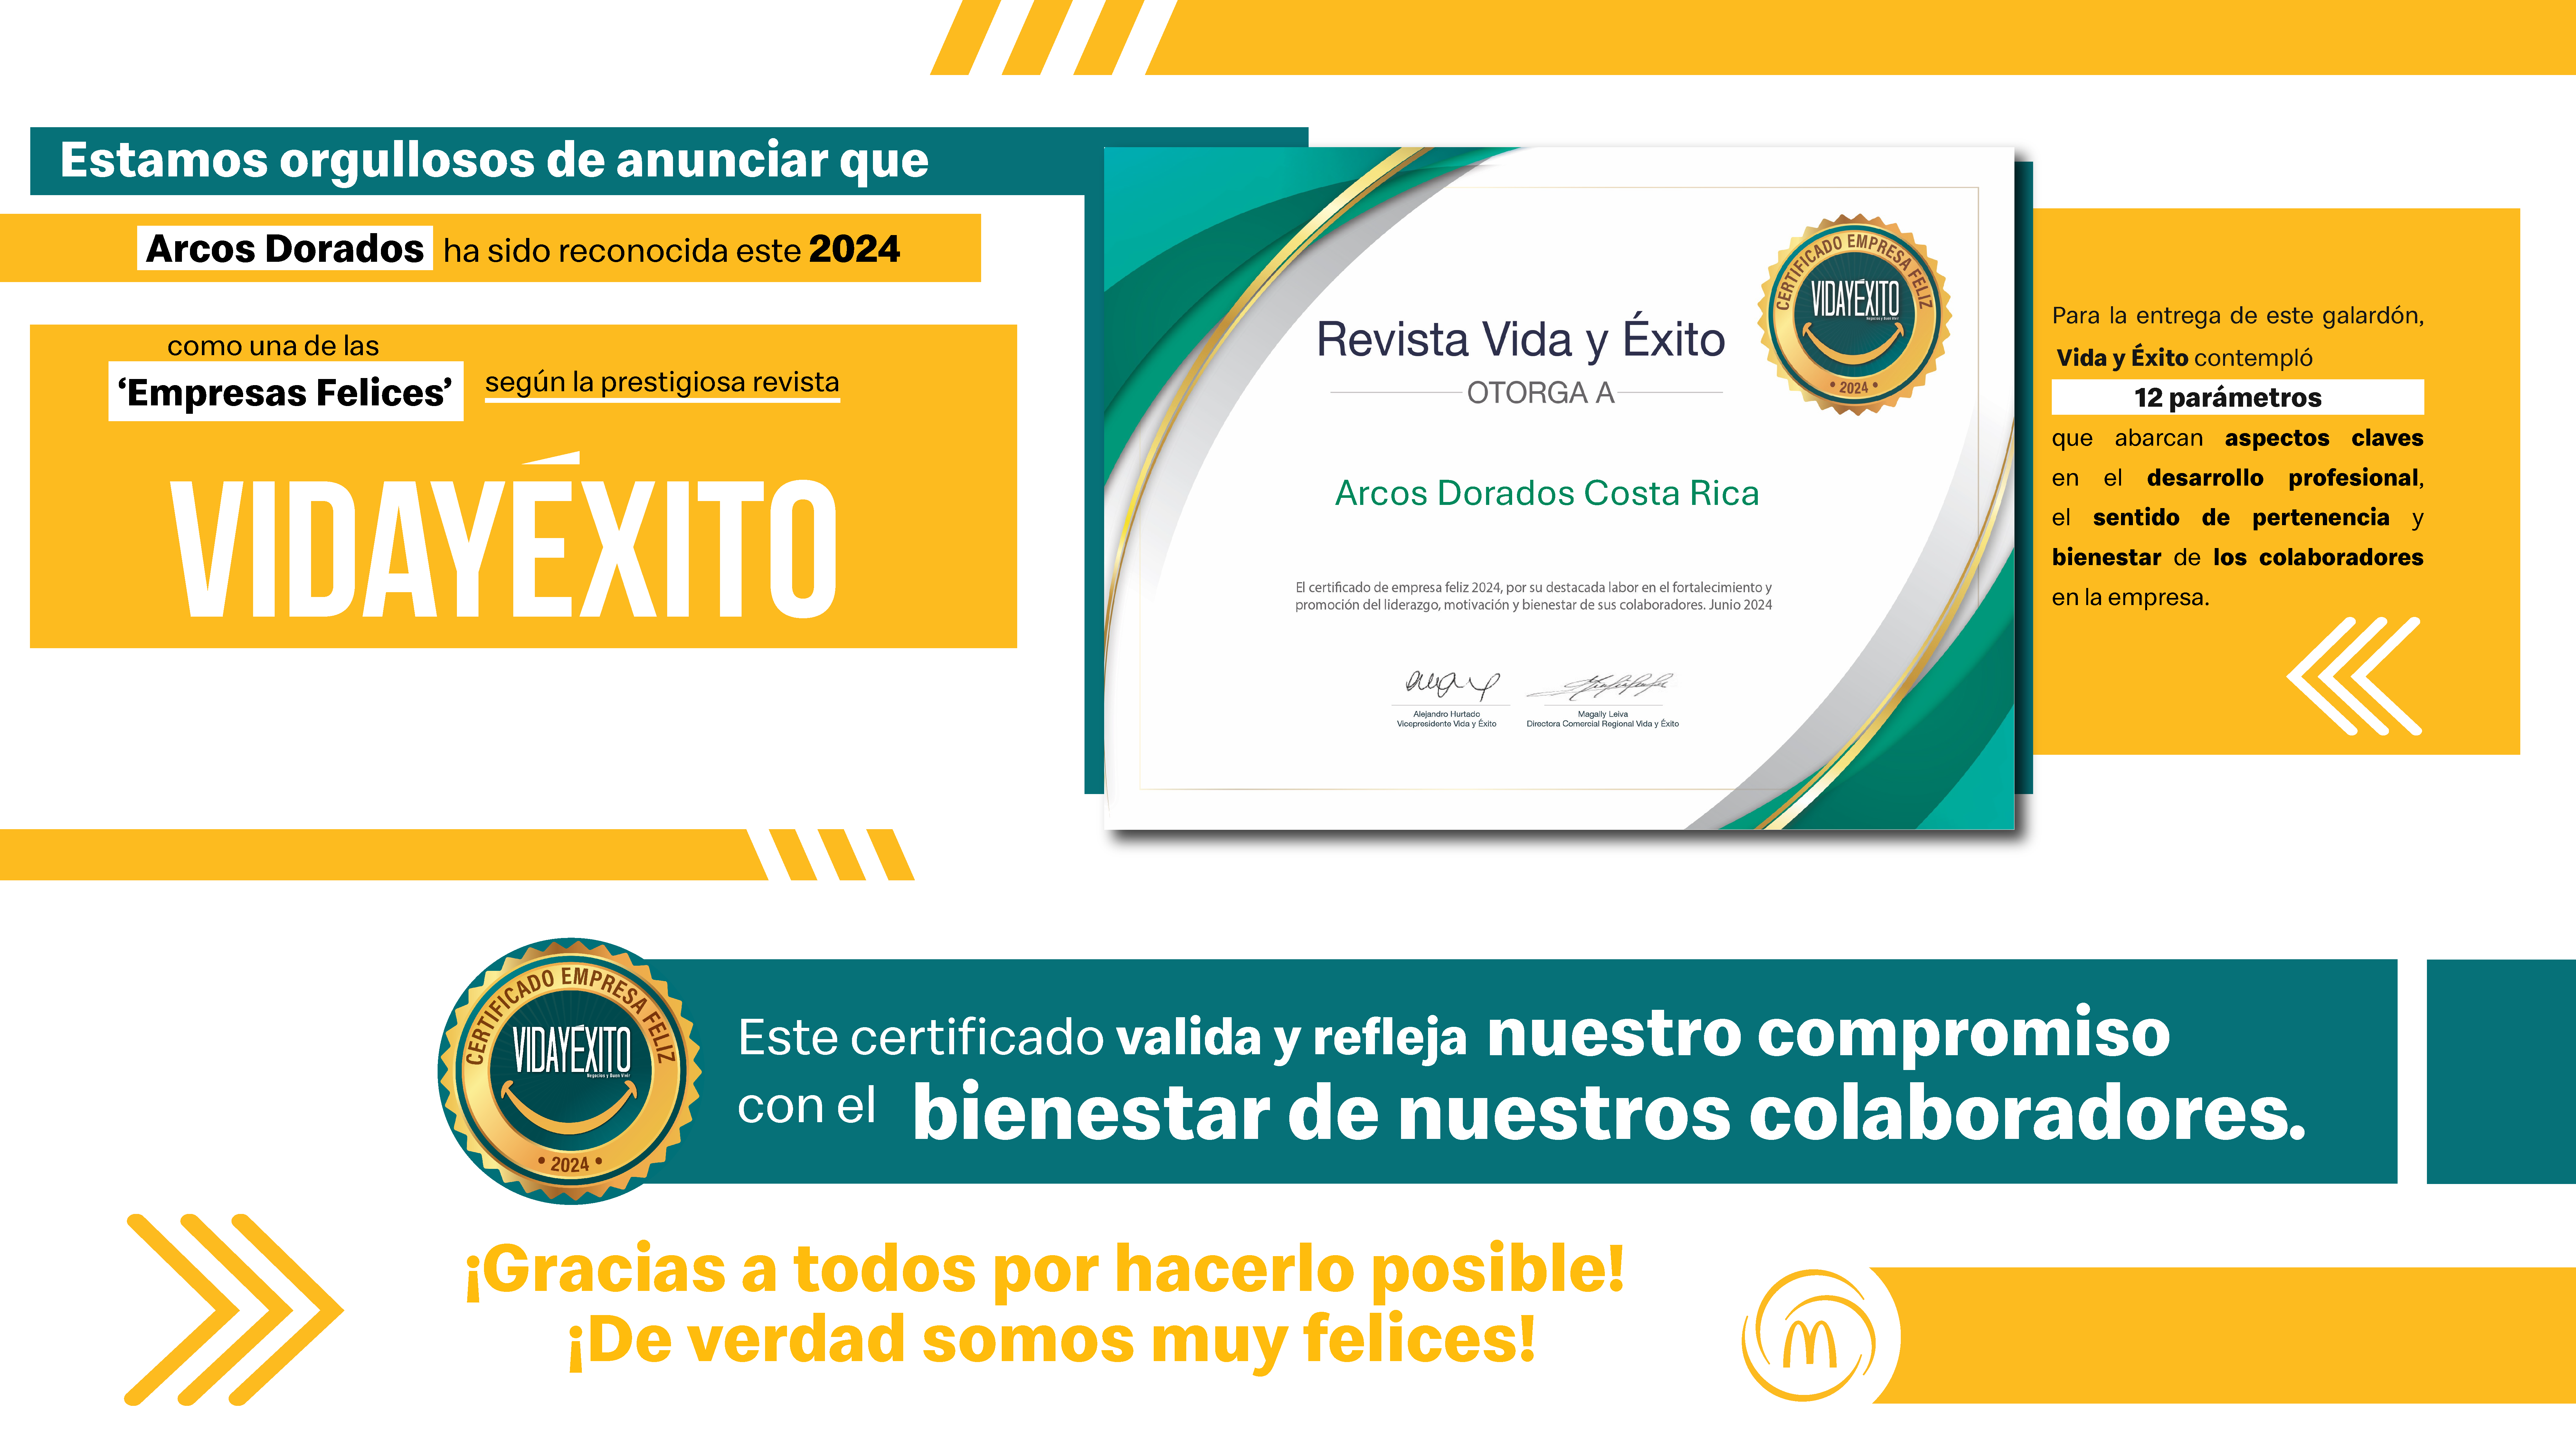 [Costa Rica] Arcos Dorados reconocida entre las empresas más felices del país